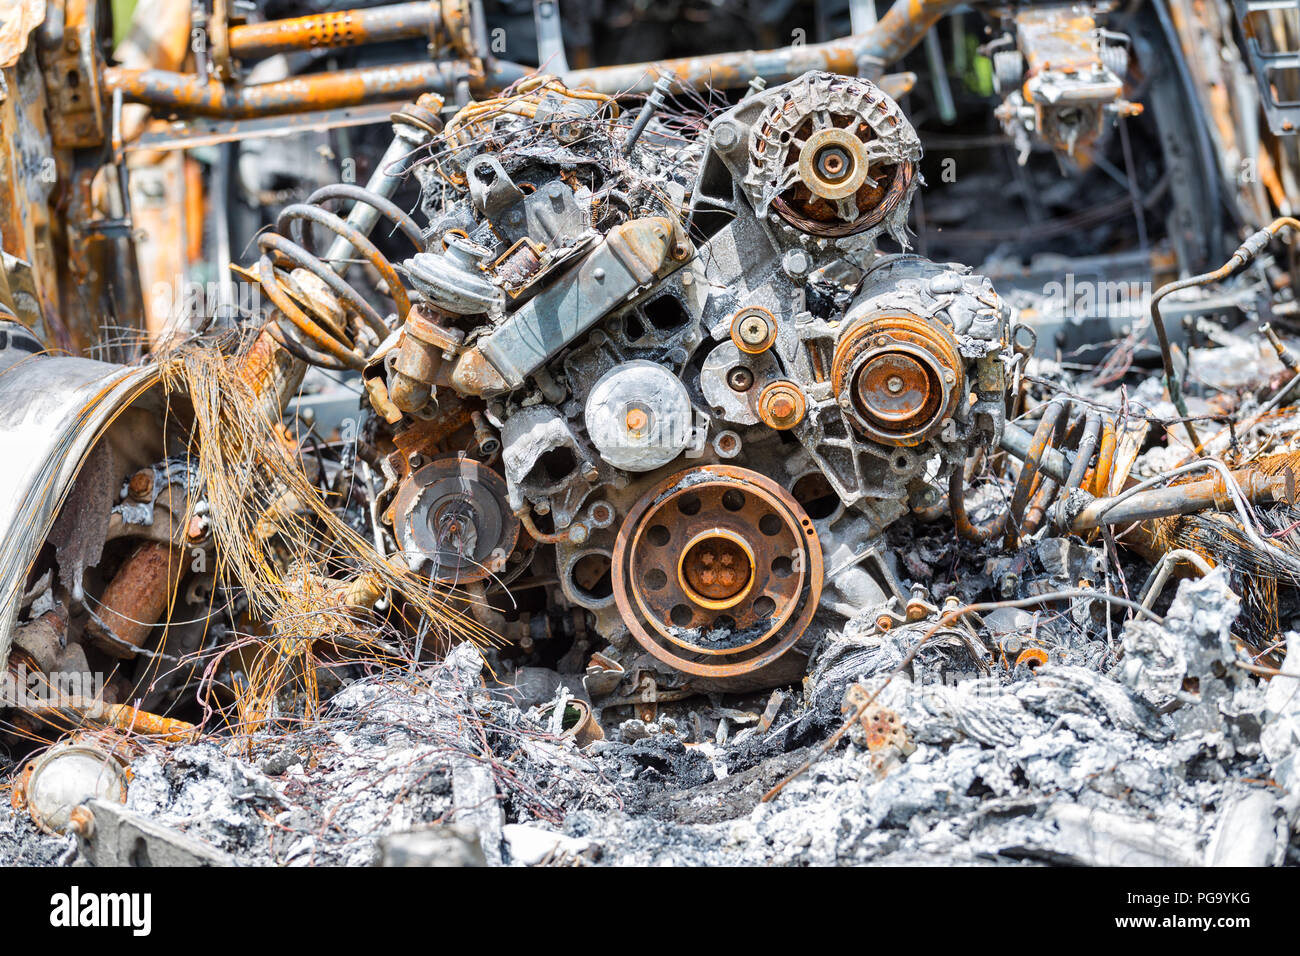 Verbrannt und rostige Motor aus einem beschädigten Auto Stockfoto